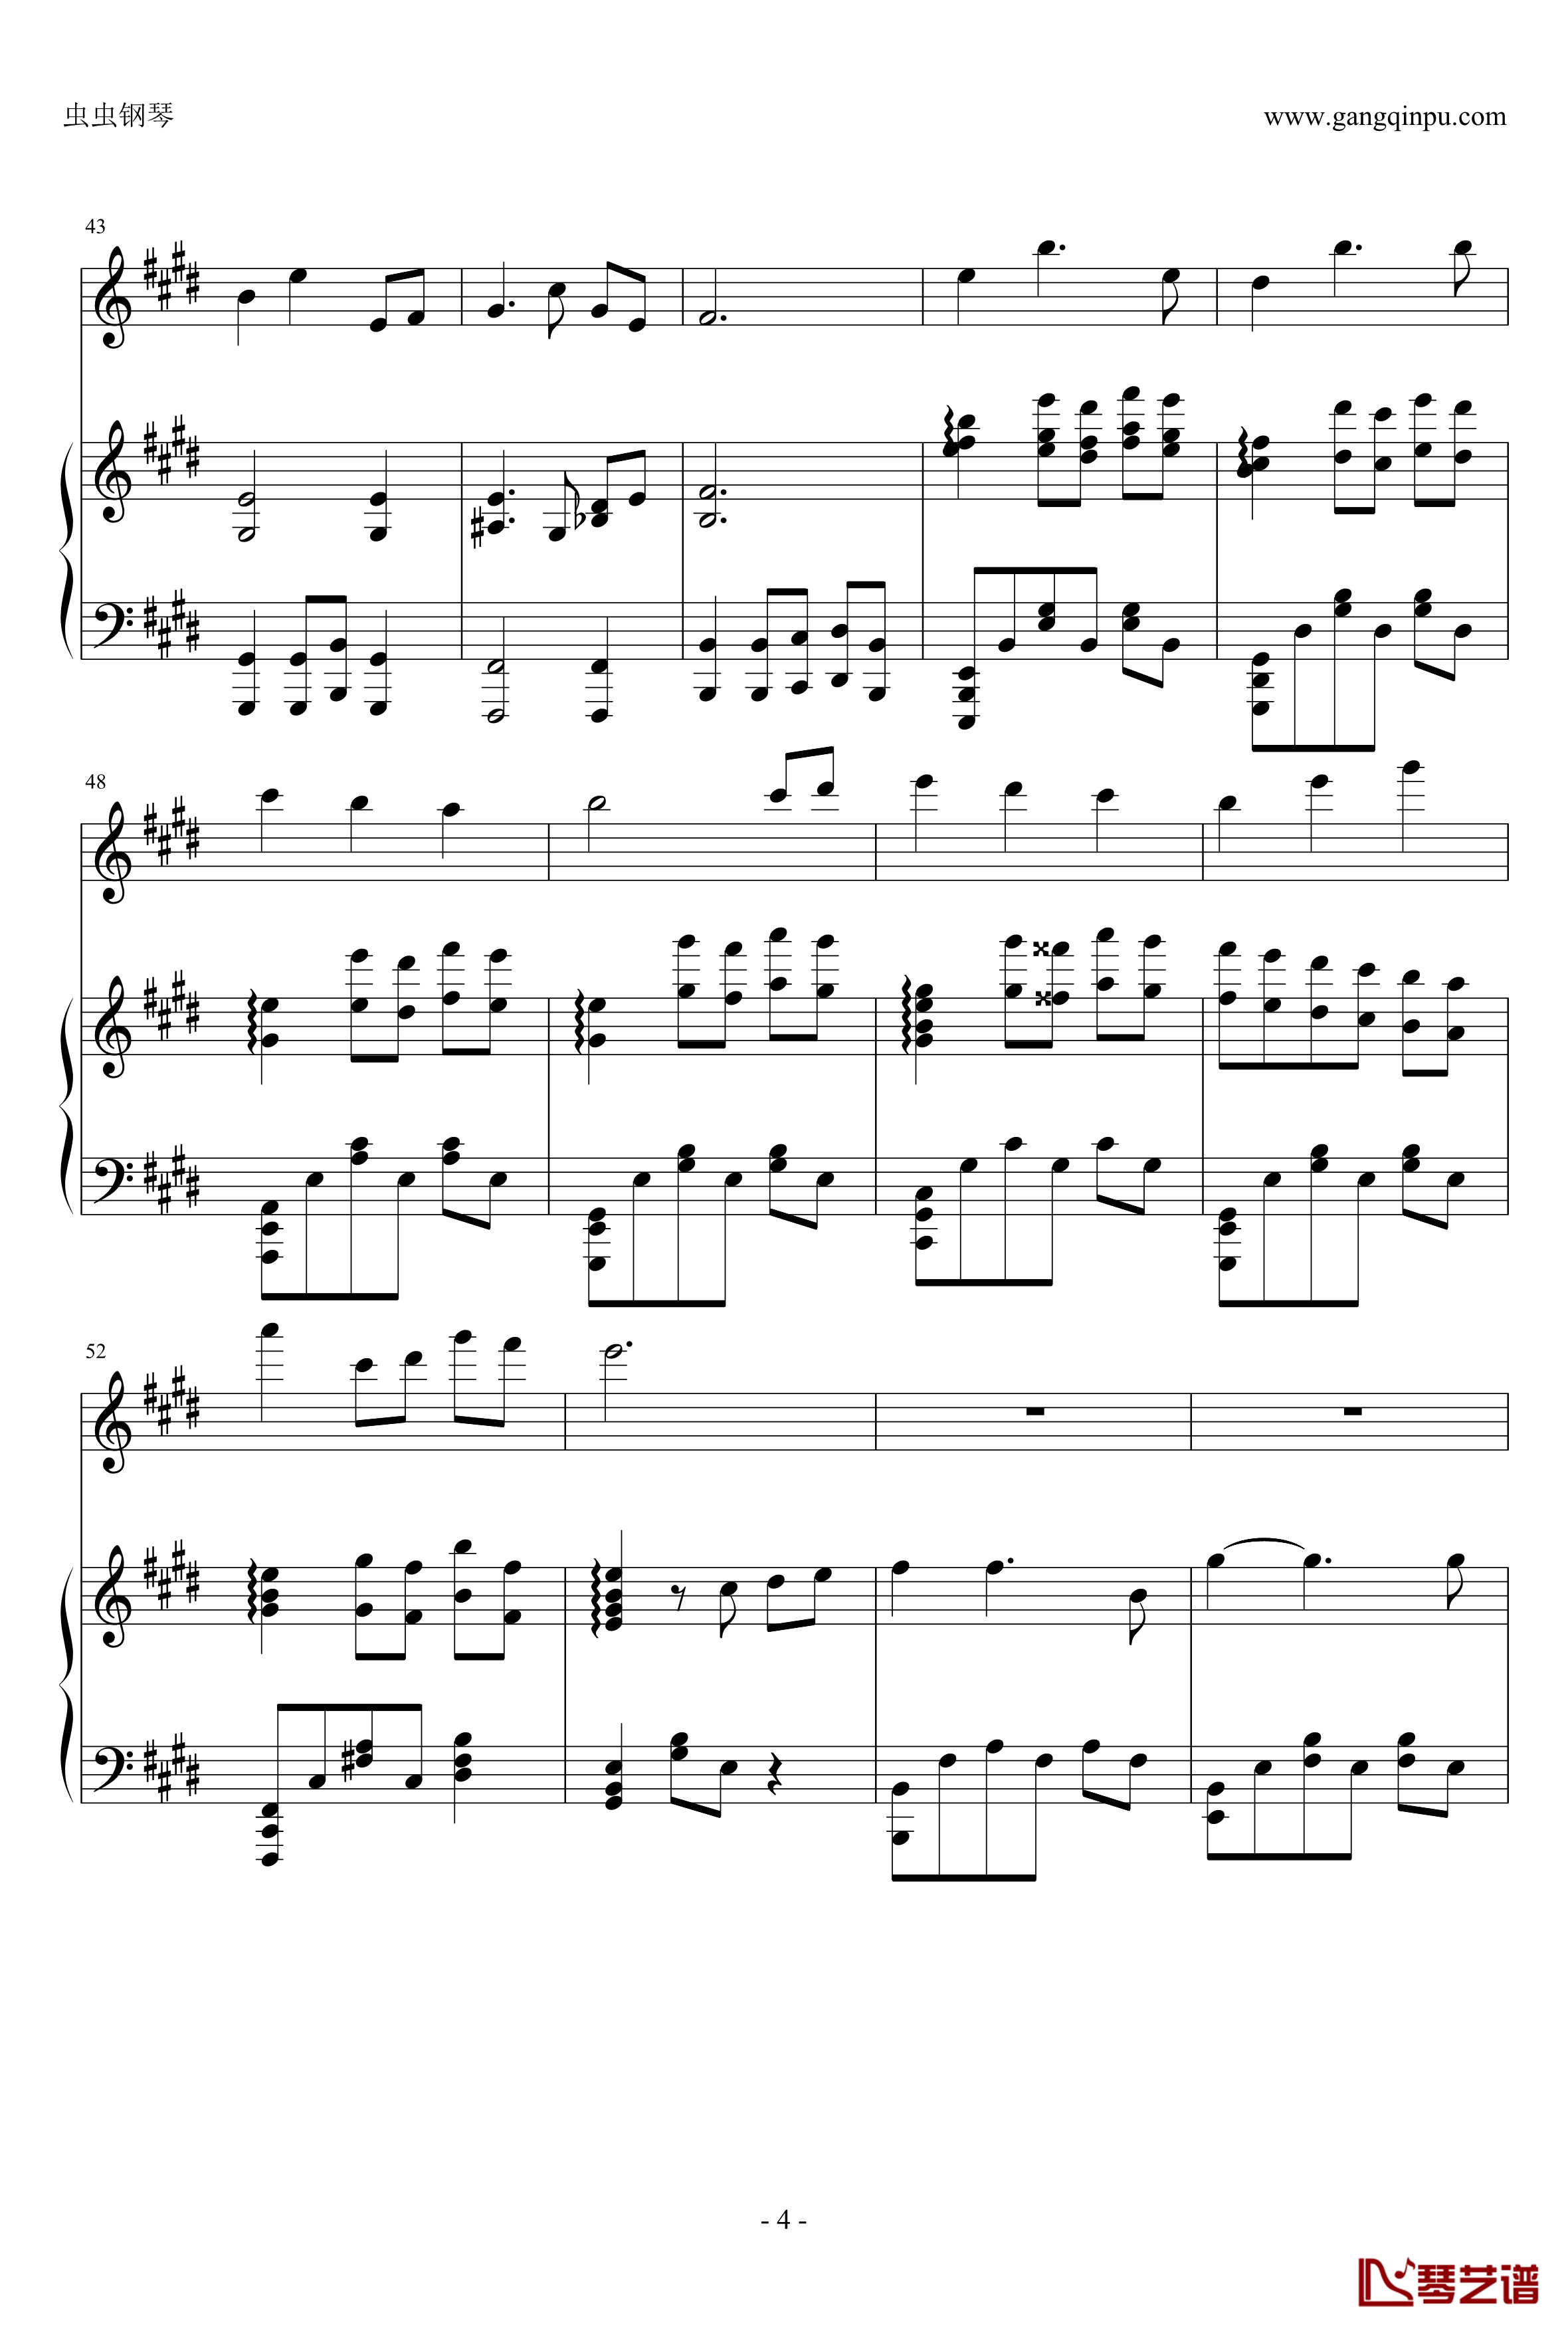 千寻的圆舞曲钢琴谱-钢琴+小提琴版-千与千寻4